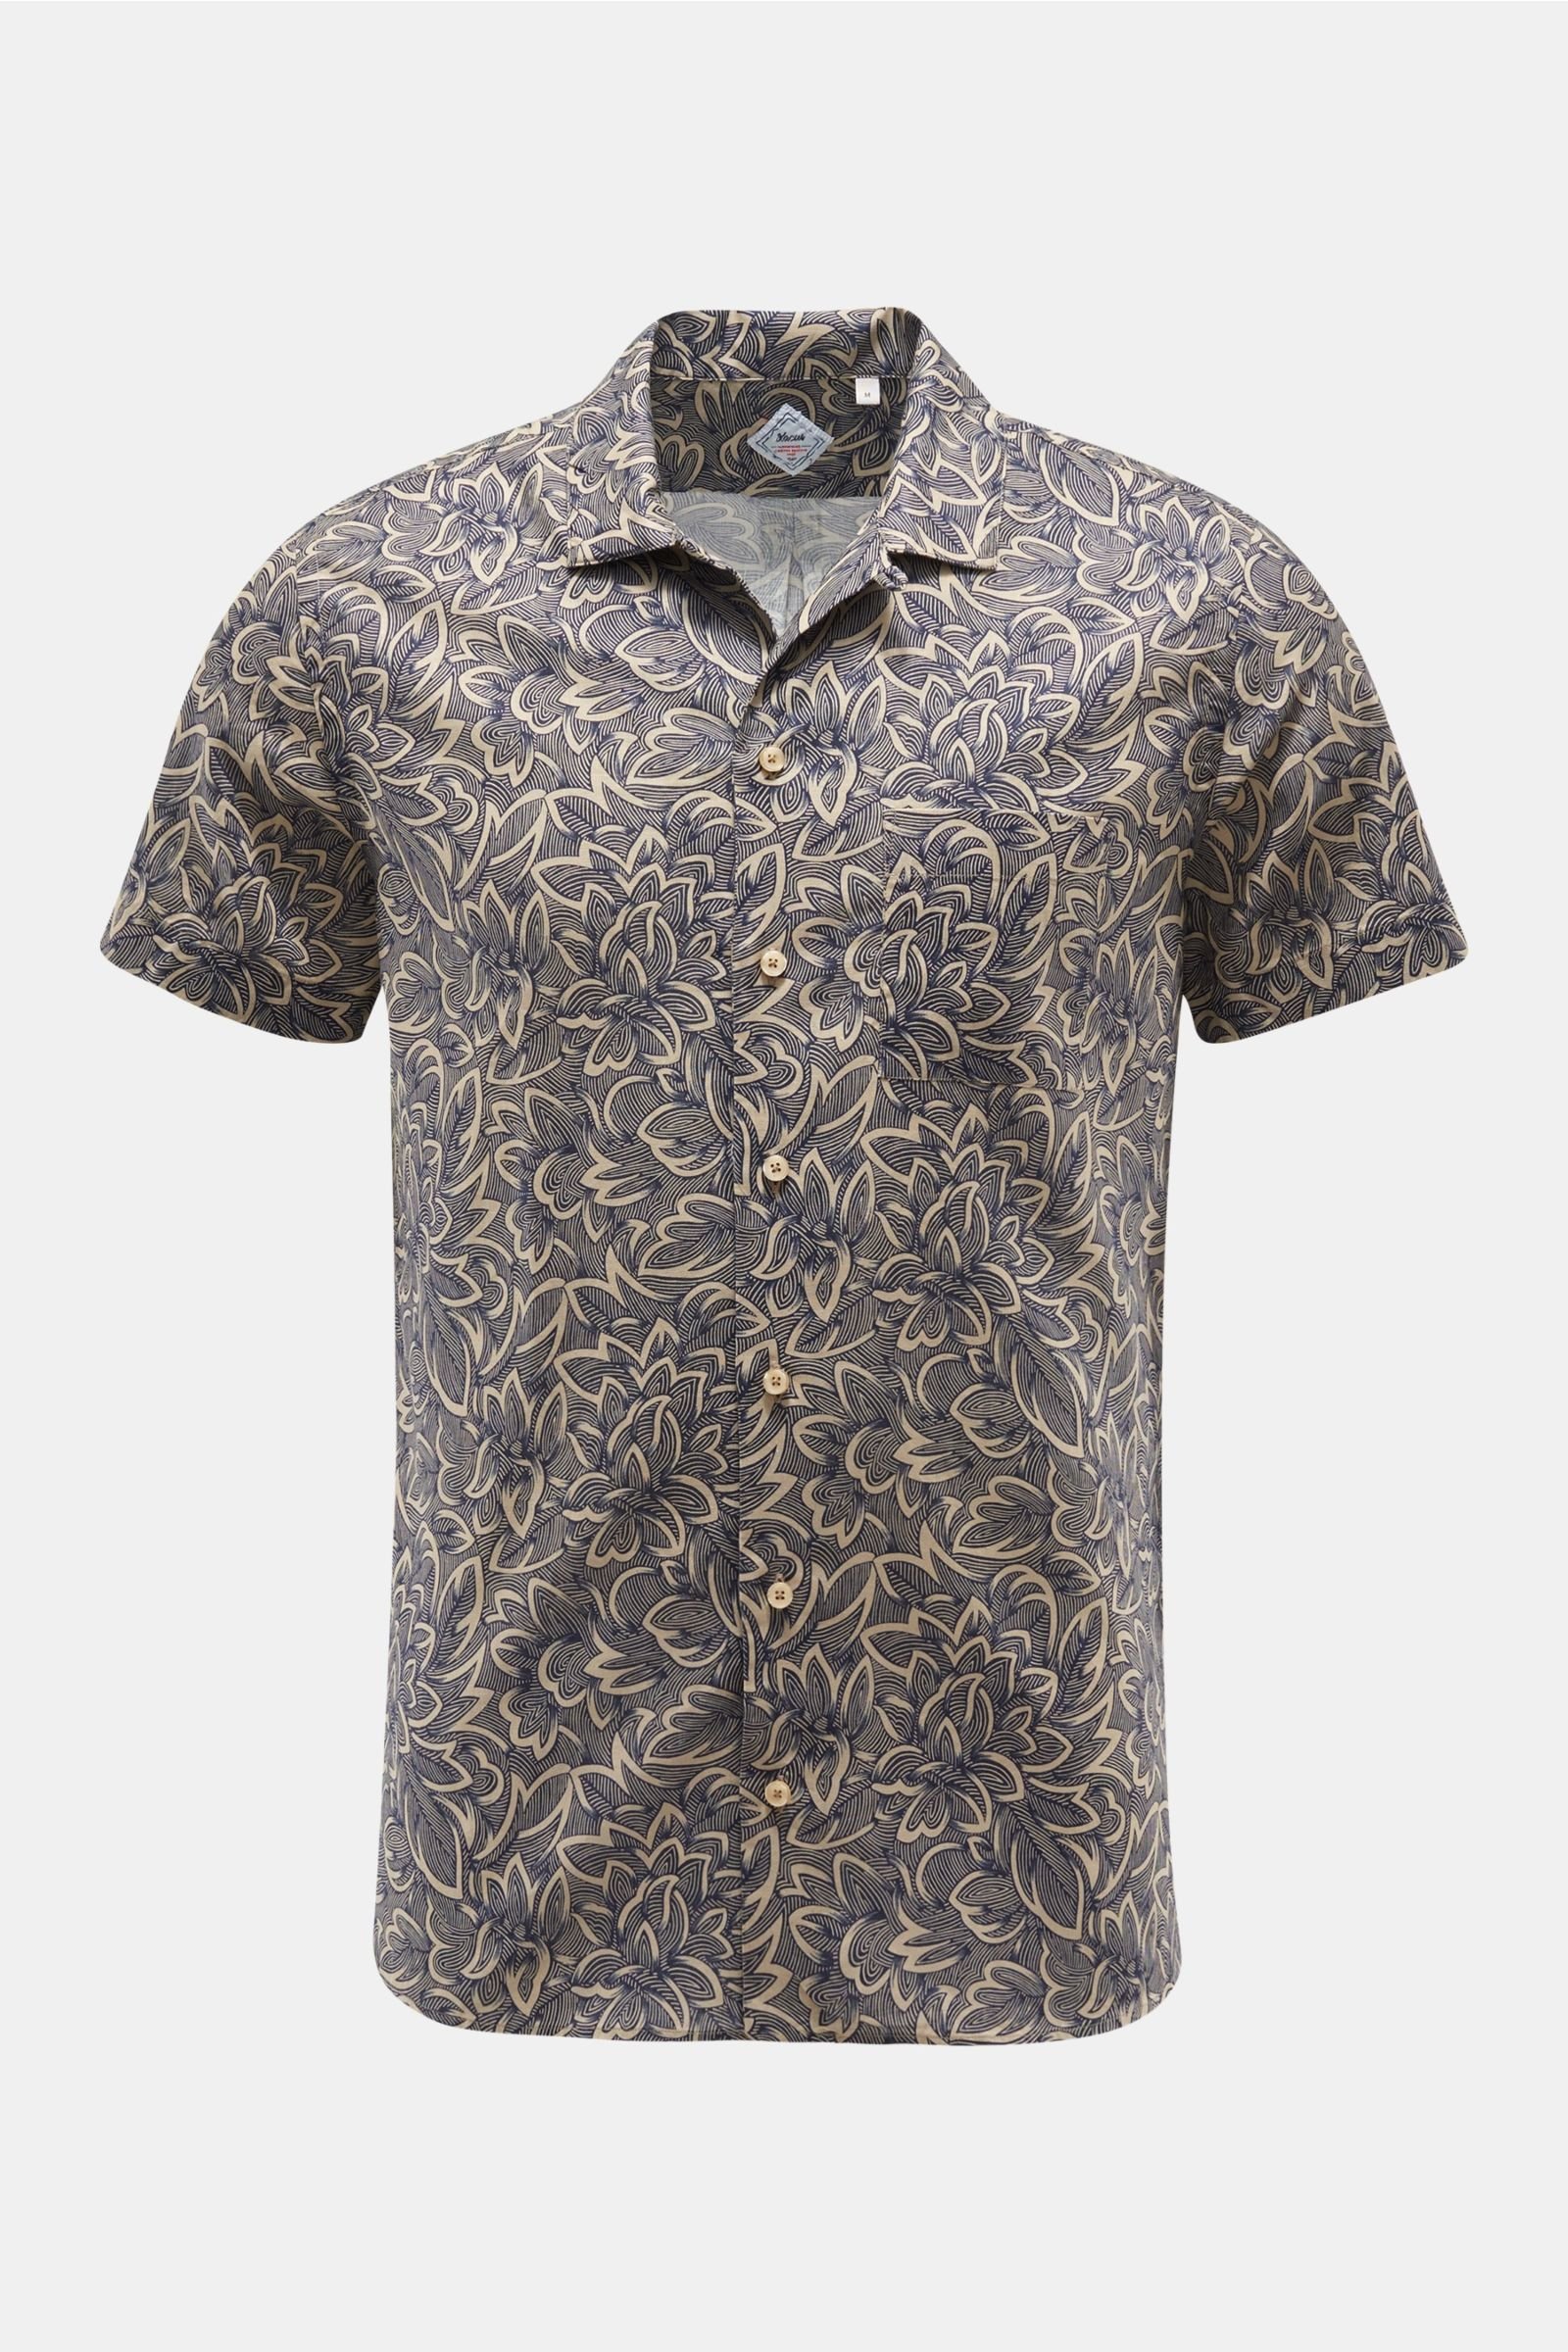 Short sleeve shirt Cuban collar navy/beige patterned